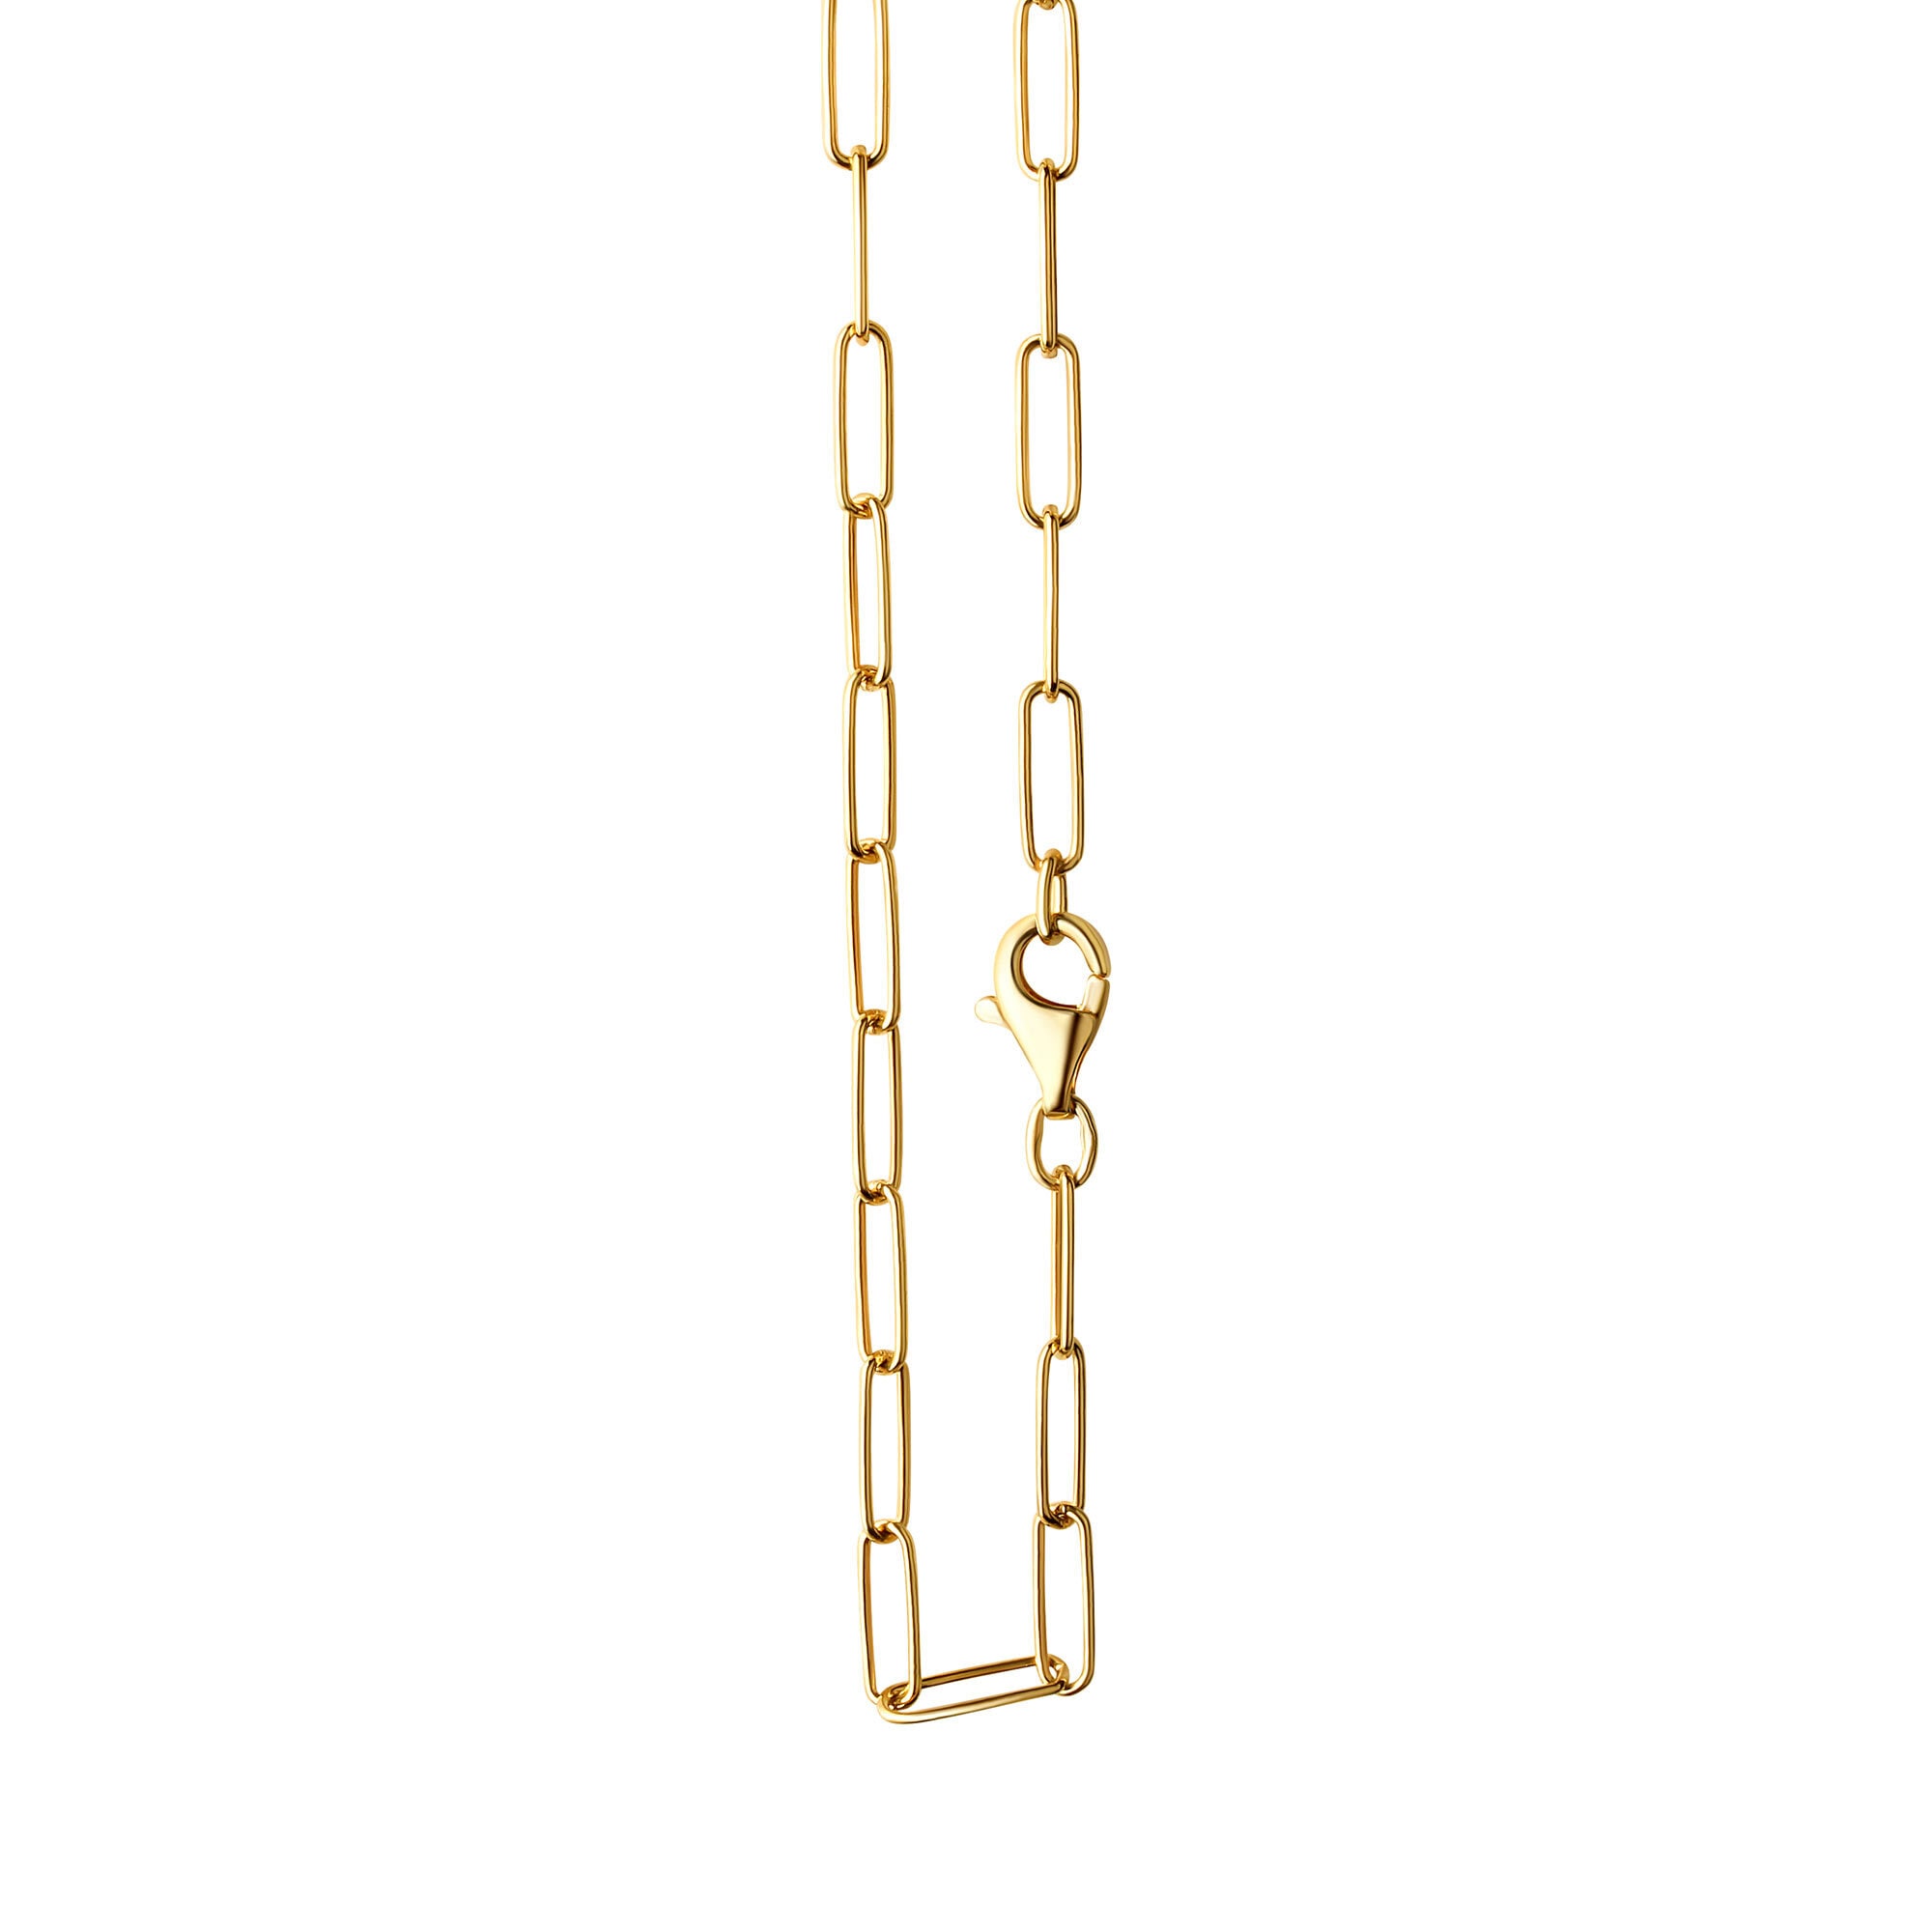 Vivance Collierkettchen »925/- Sterlingsilber glanz | Gliederkette kaufen 60 cm« BAUR vergoldet